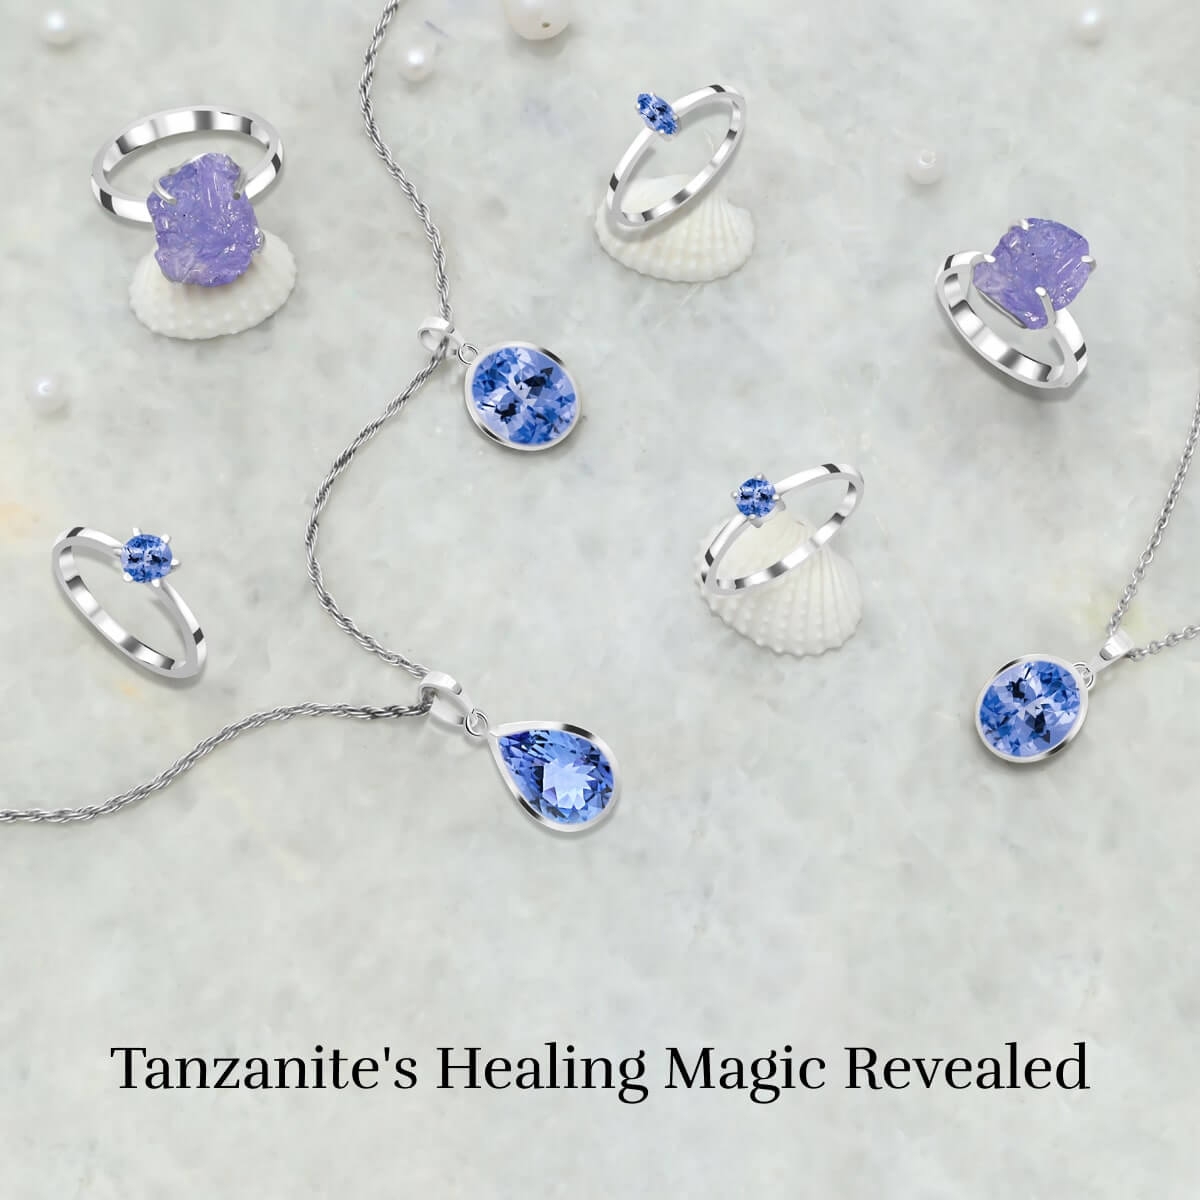 Healing properties of Tanzanite stone